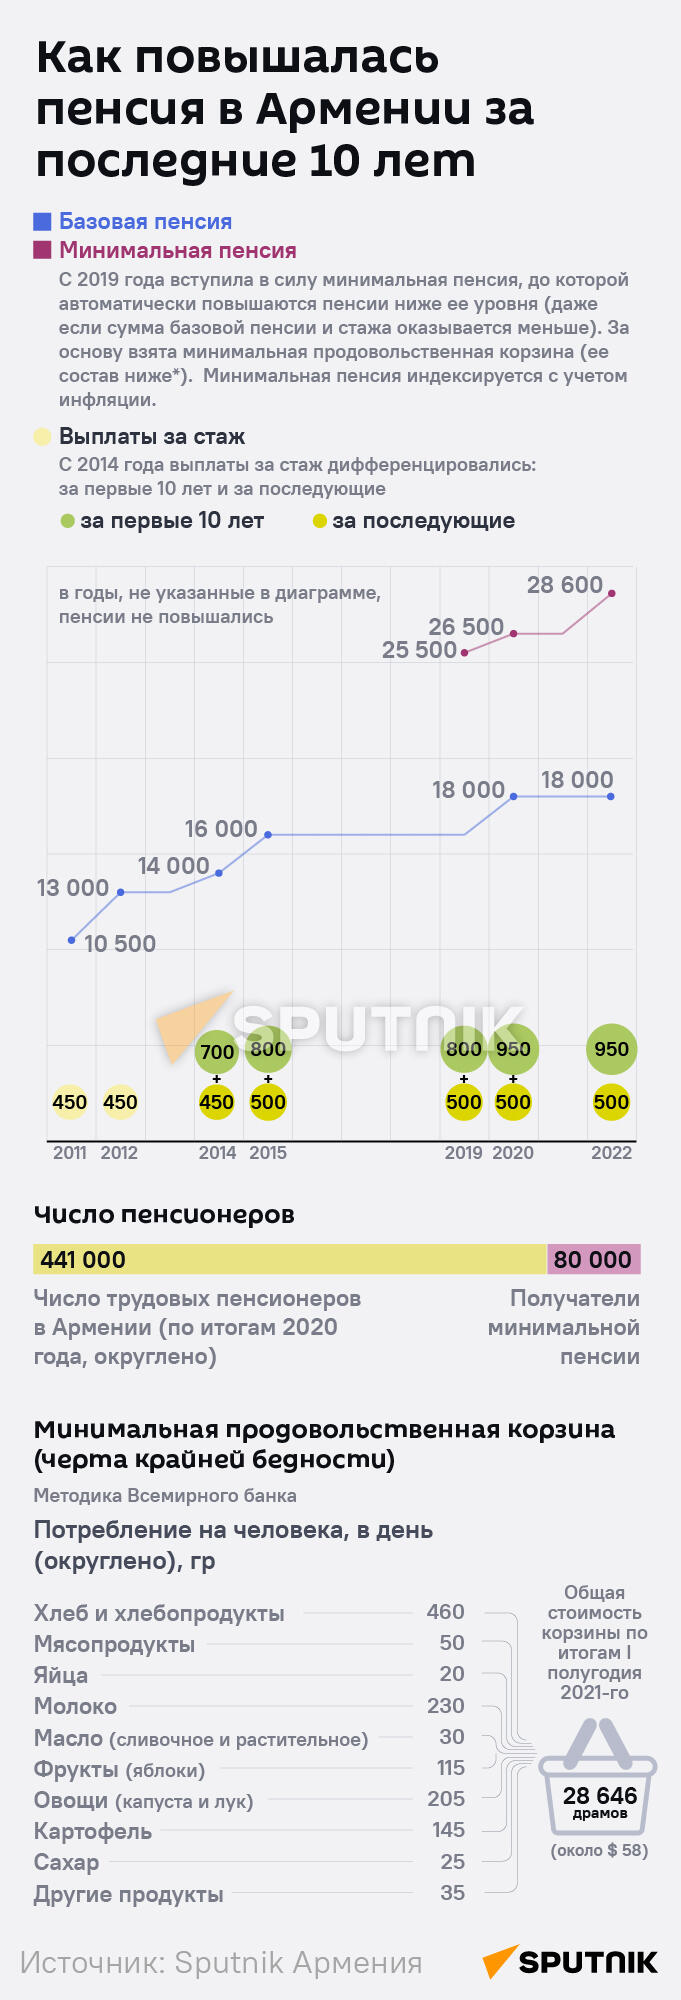 Как повышалась пенсия в Армении за последние 10 лет - Sputnik Армения